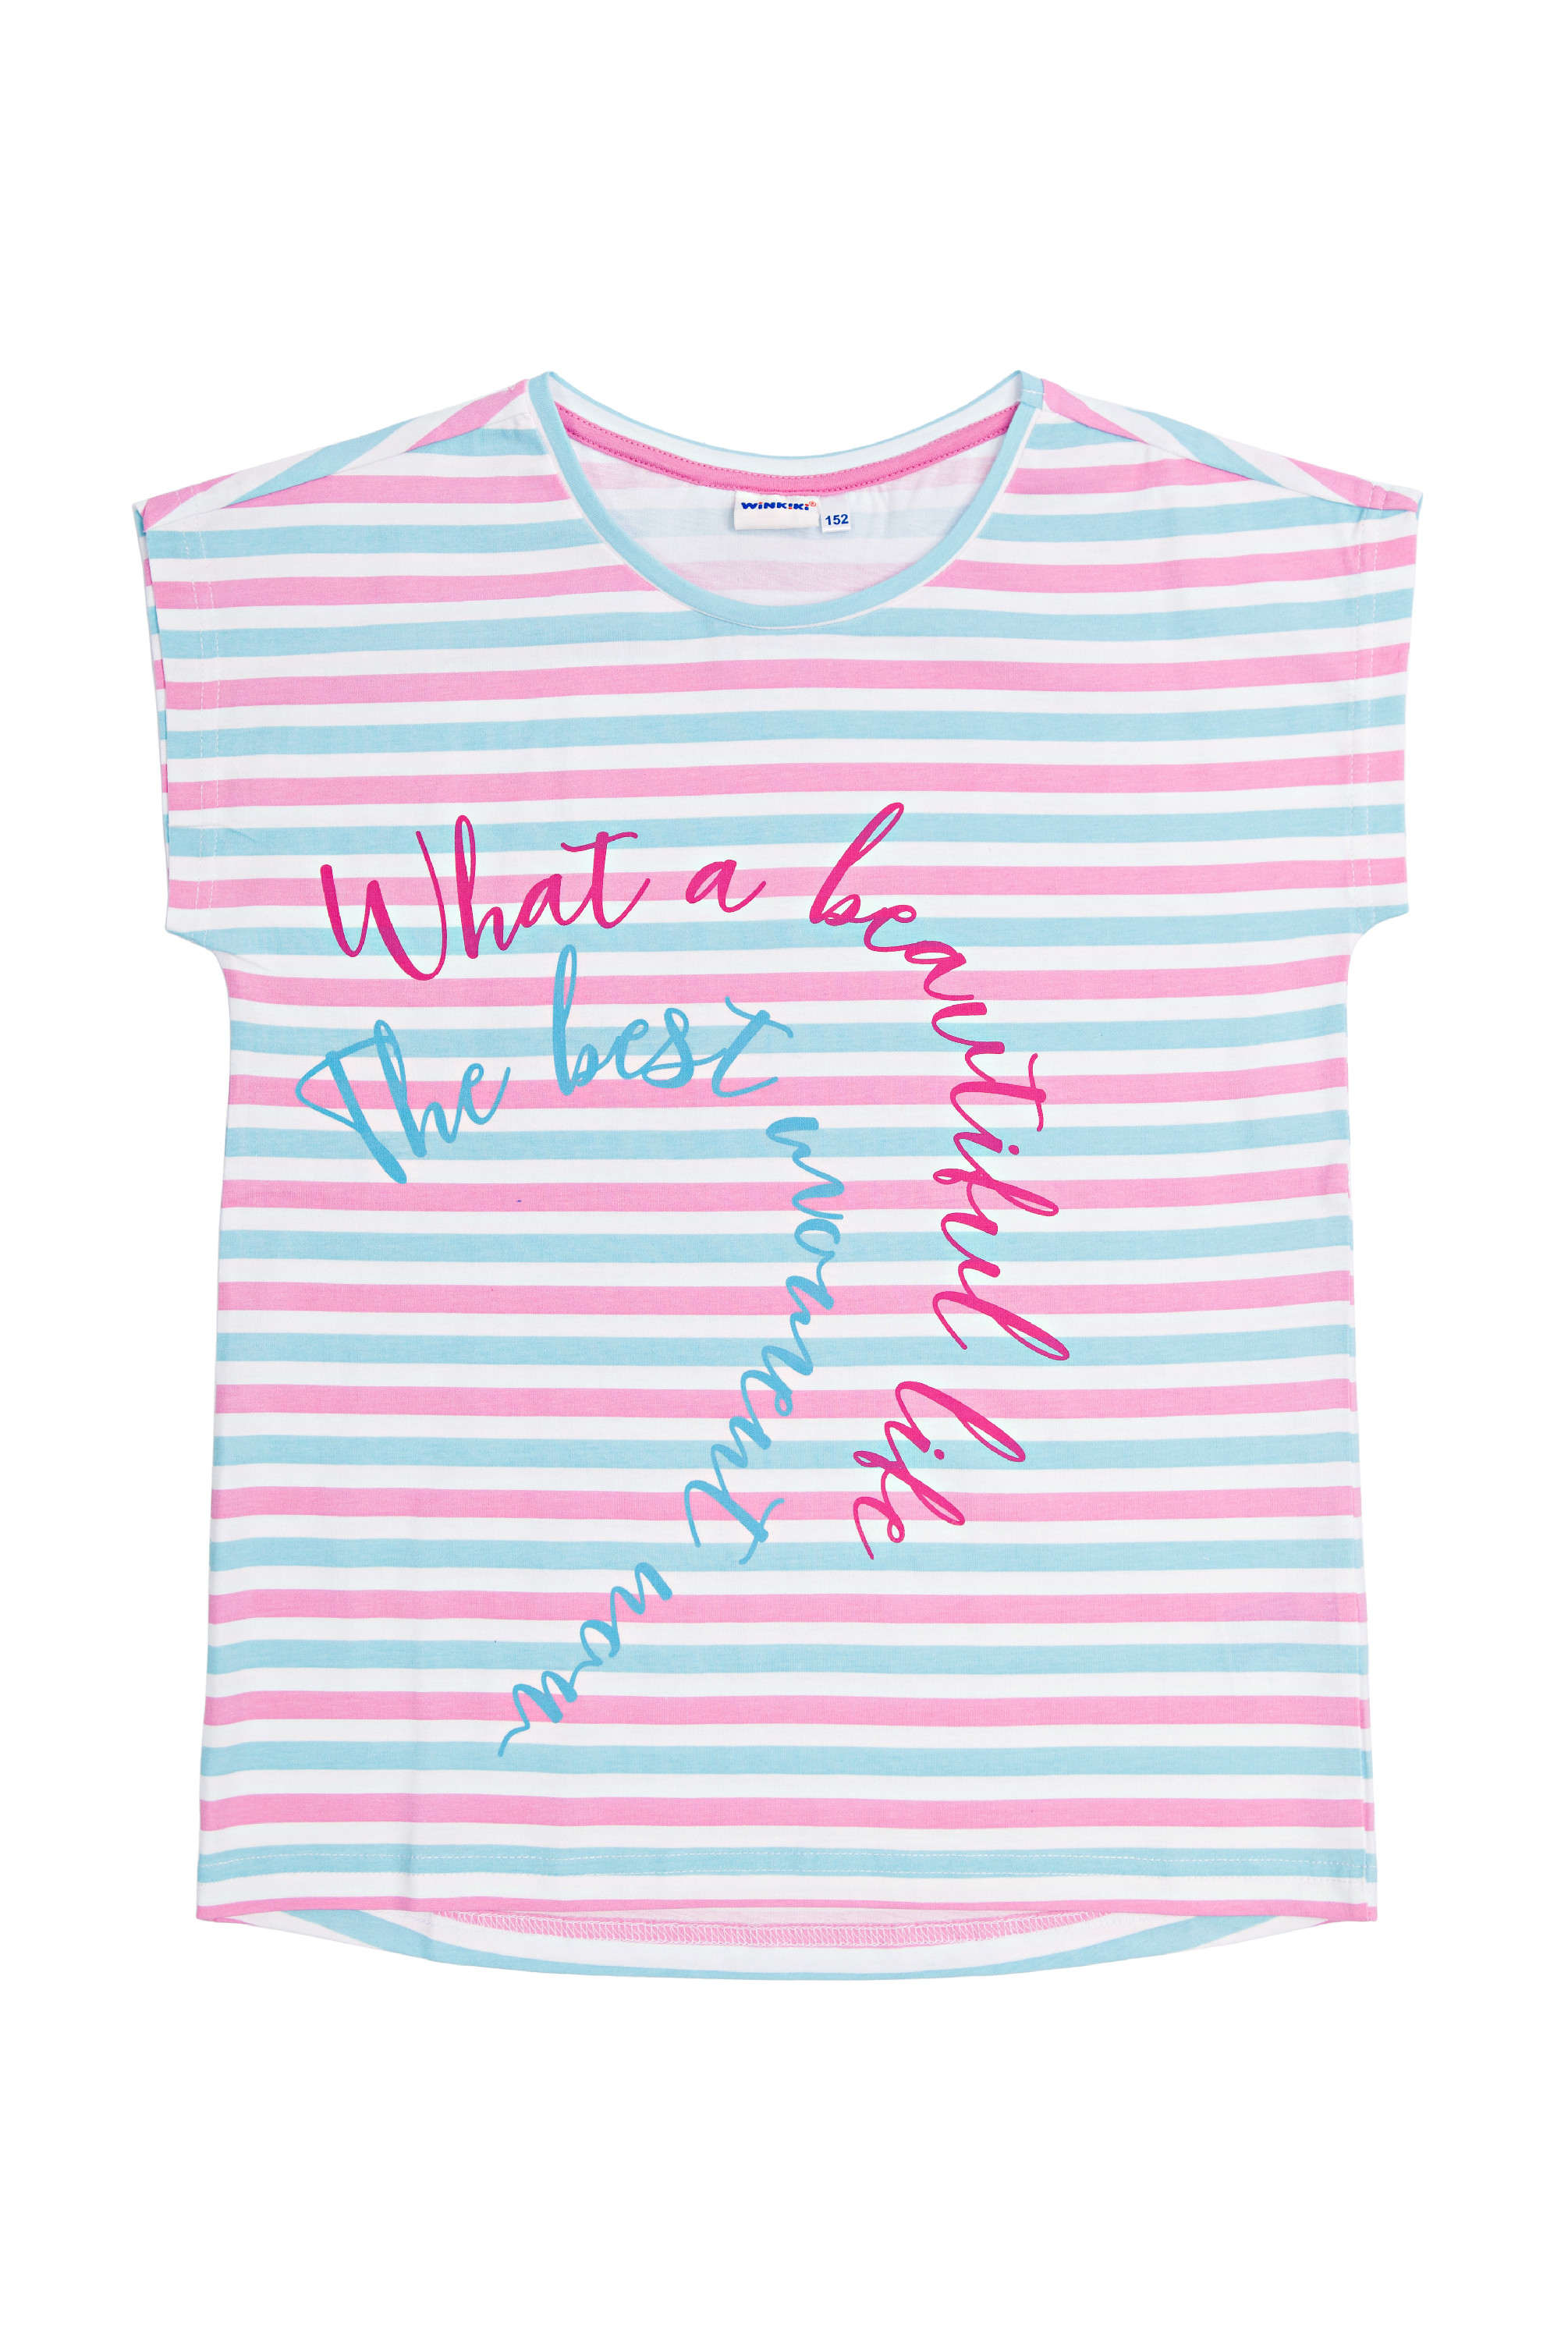 Dívčí triko - Winkiki WTG 01799, růžová / proužek Barva: Růžová, Velikost: 146